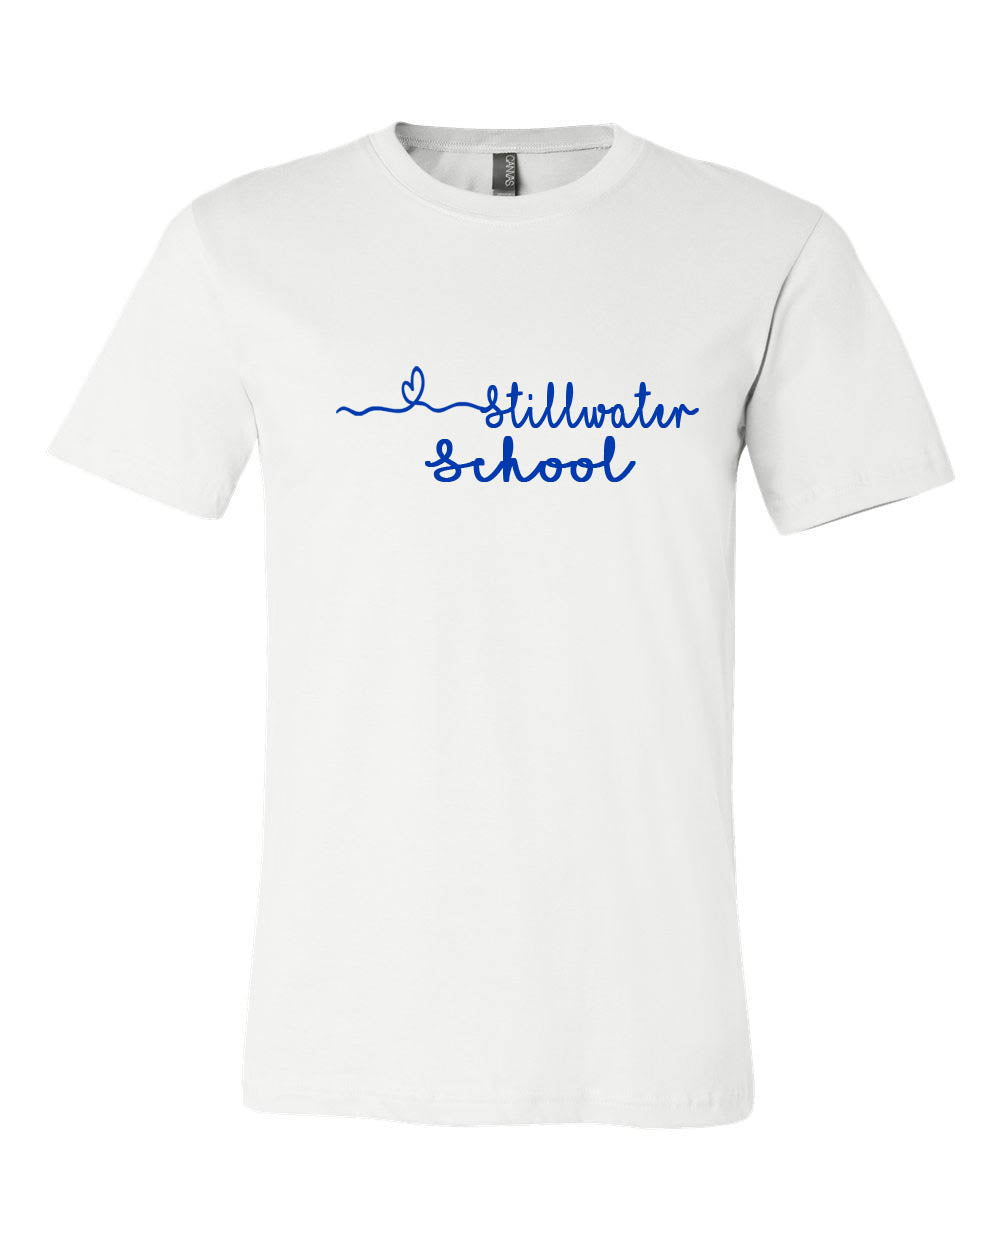 Stillwater design 9 T-Shirt